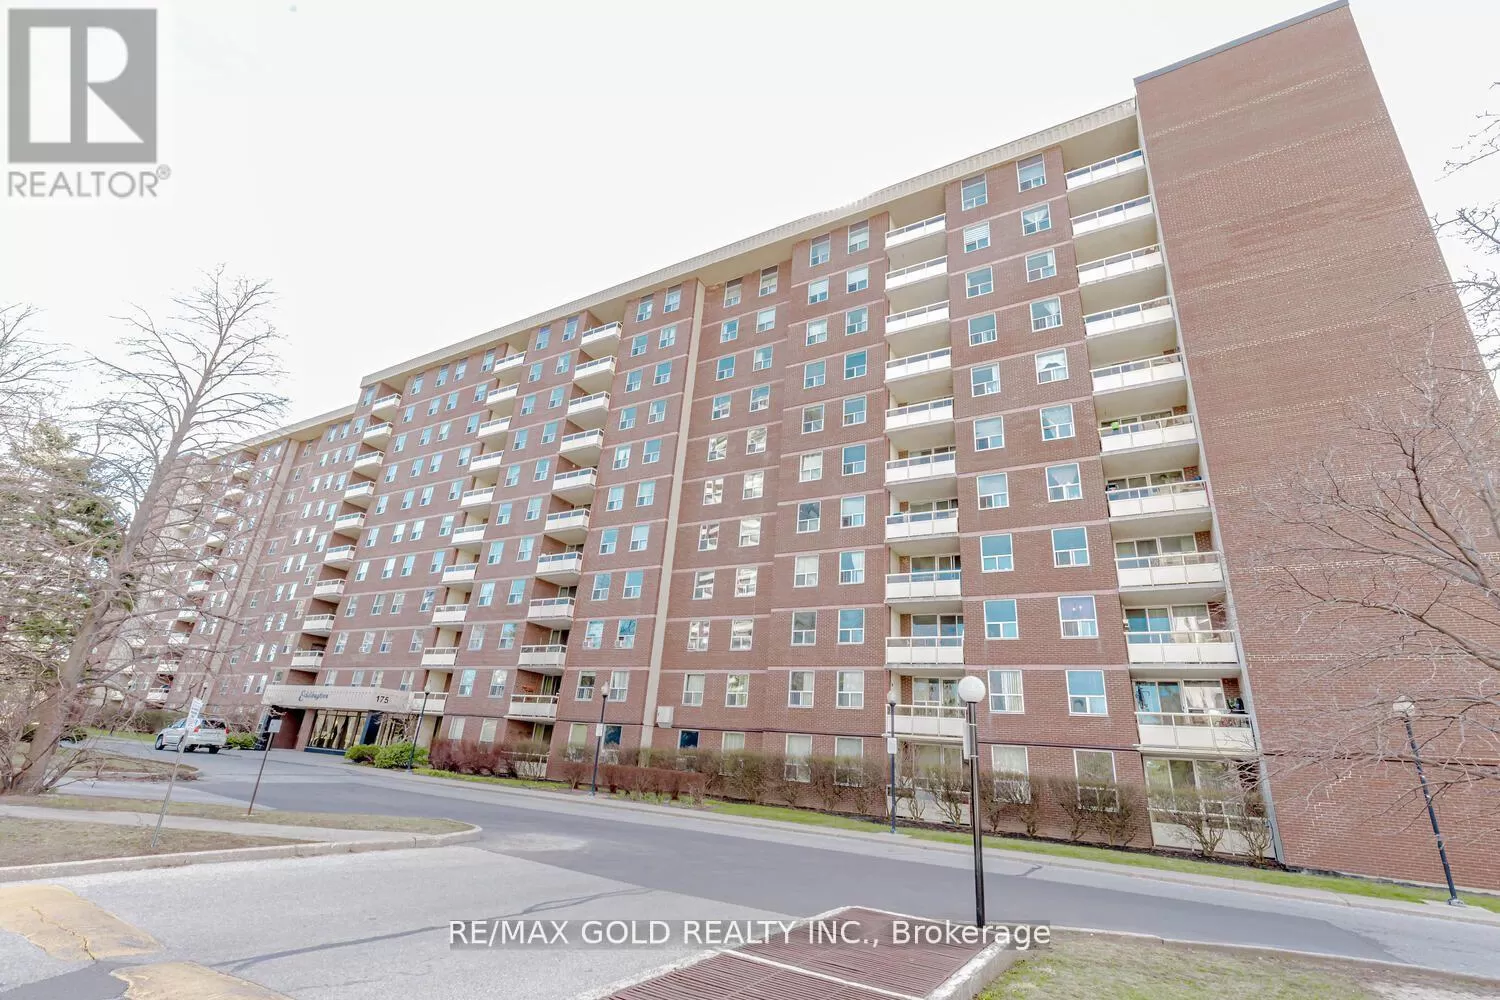 Apartment for rent: 905 - 175 Hilda Avenue, Toronto, Ontario M2M 1V8